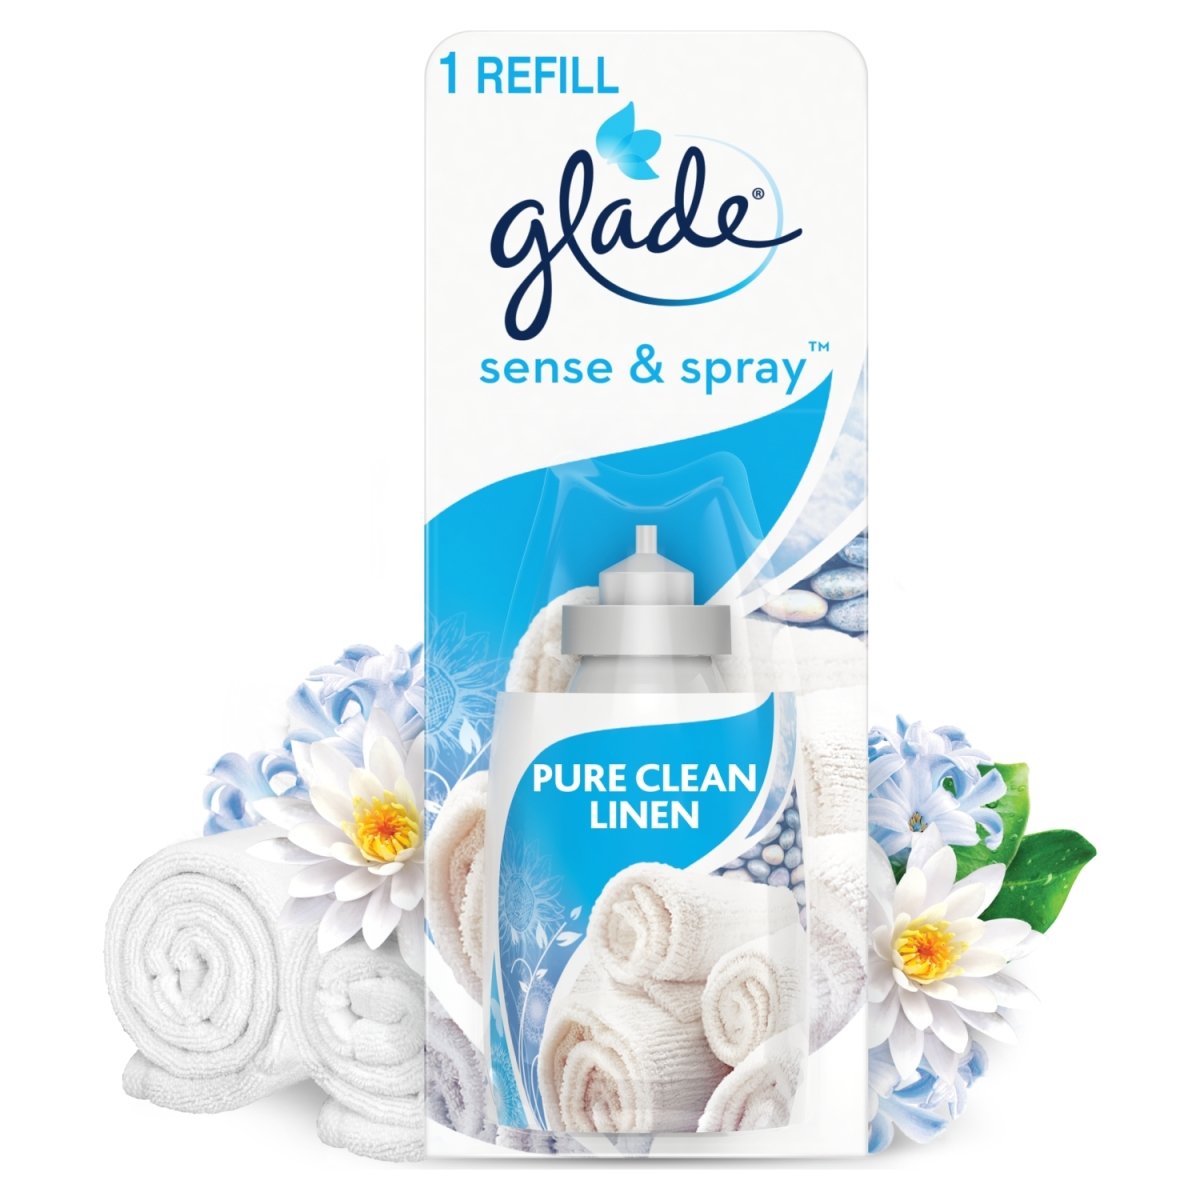 Glade Sense And Spray Refill Clean Linen - Intamarque 5000204594959